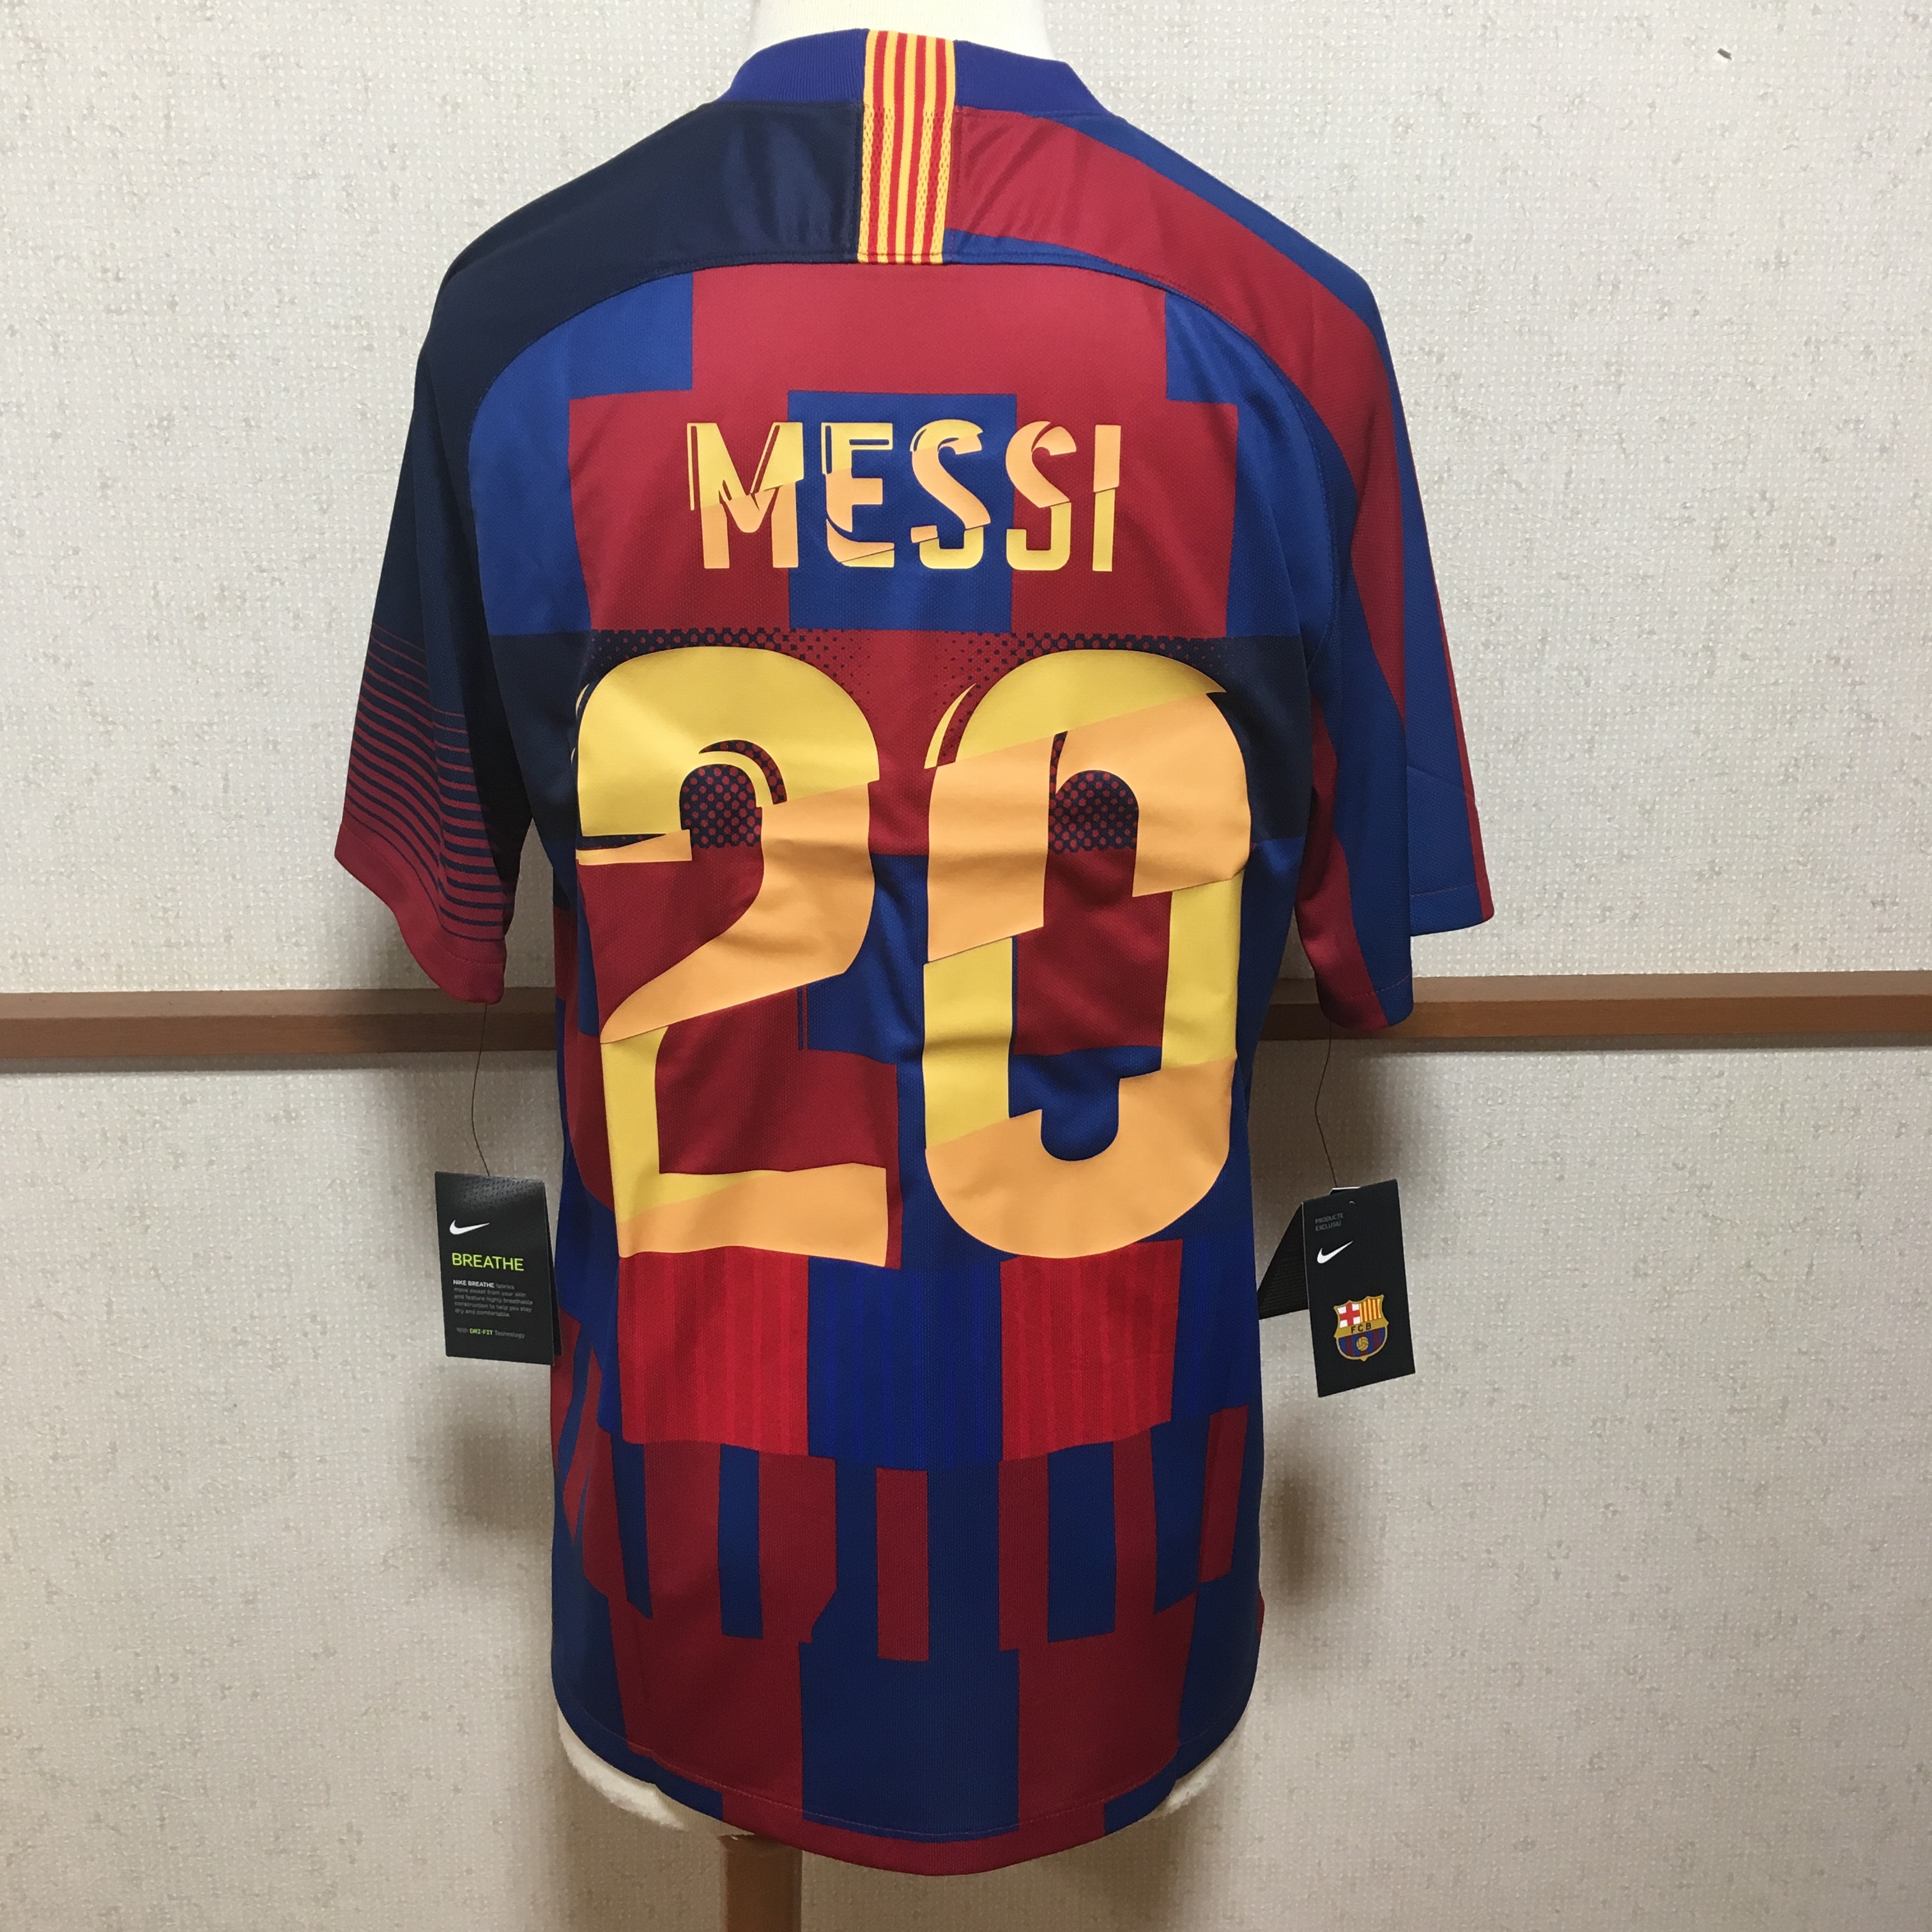 Nike ナイキ Fcバルセロナ Messi メッシ 18 19シーズン 周年記念ユニフォーム Freak スポーツウェア通販 海外ブランド 日本国内未入荷 海外直輸入